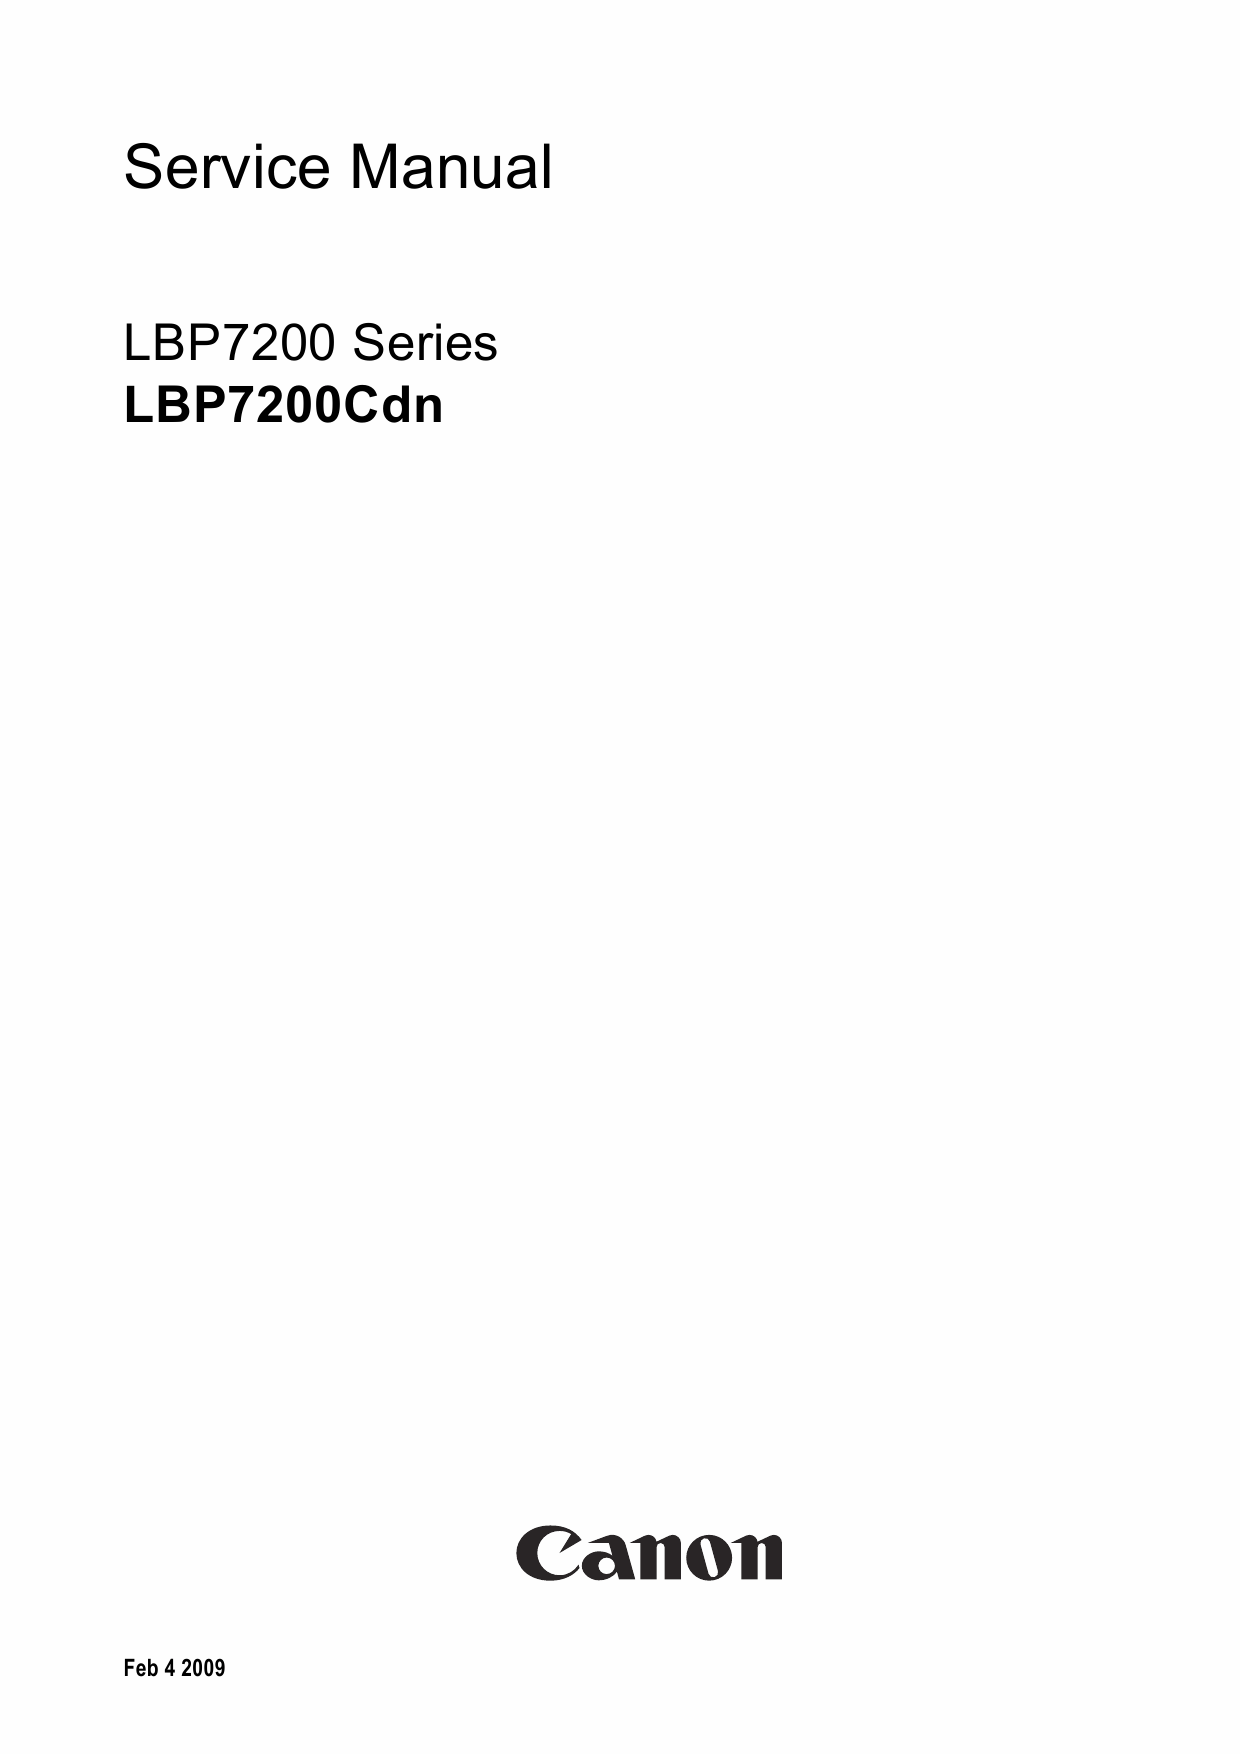 Canon imageCLASS LBP-7200Cdn Service Manual-1